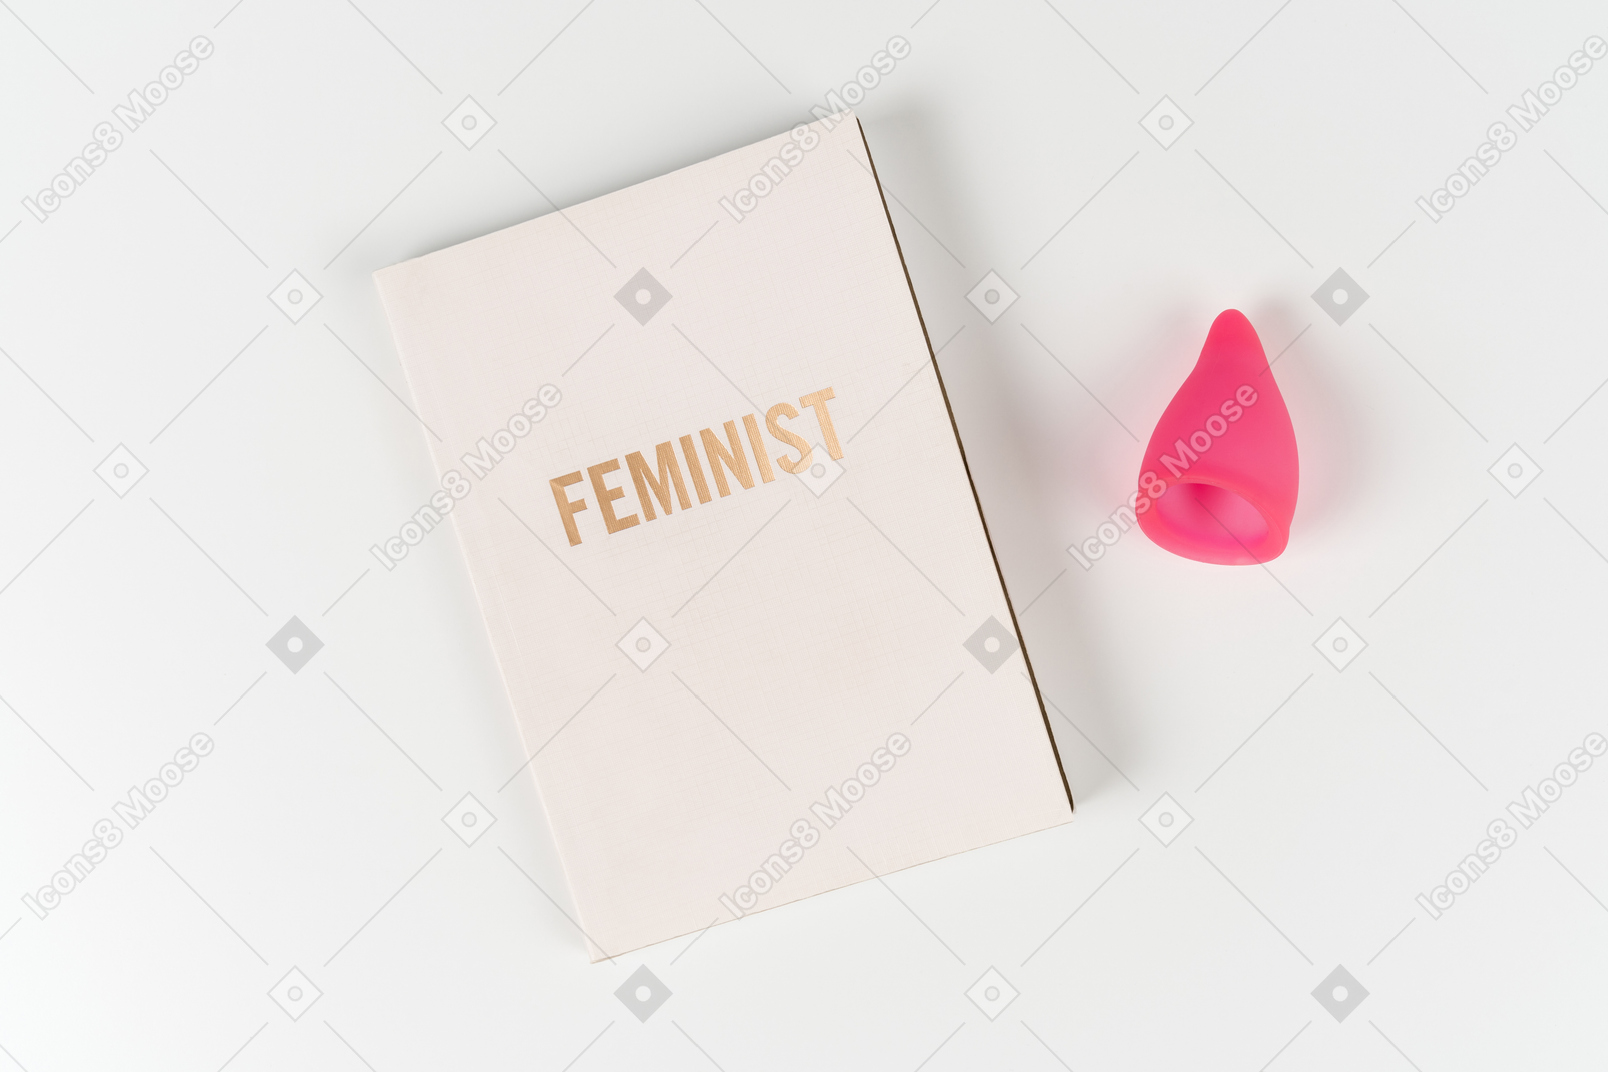 Феминистская книга и менструальная чаша на белом фоне